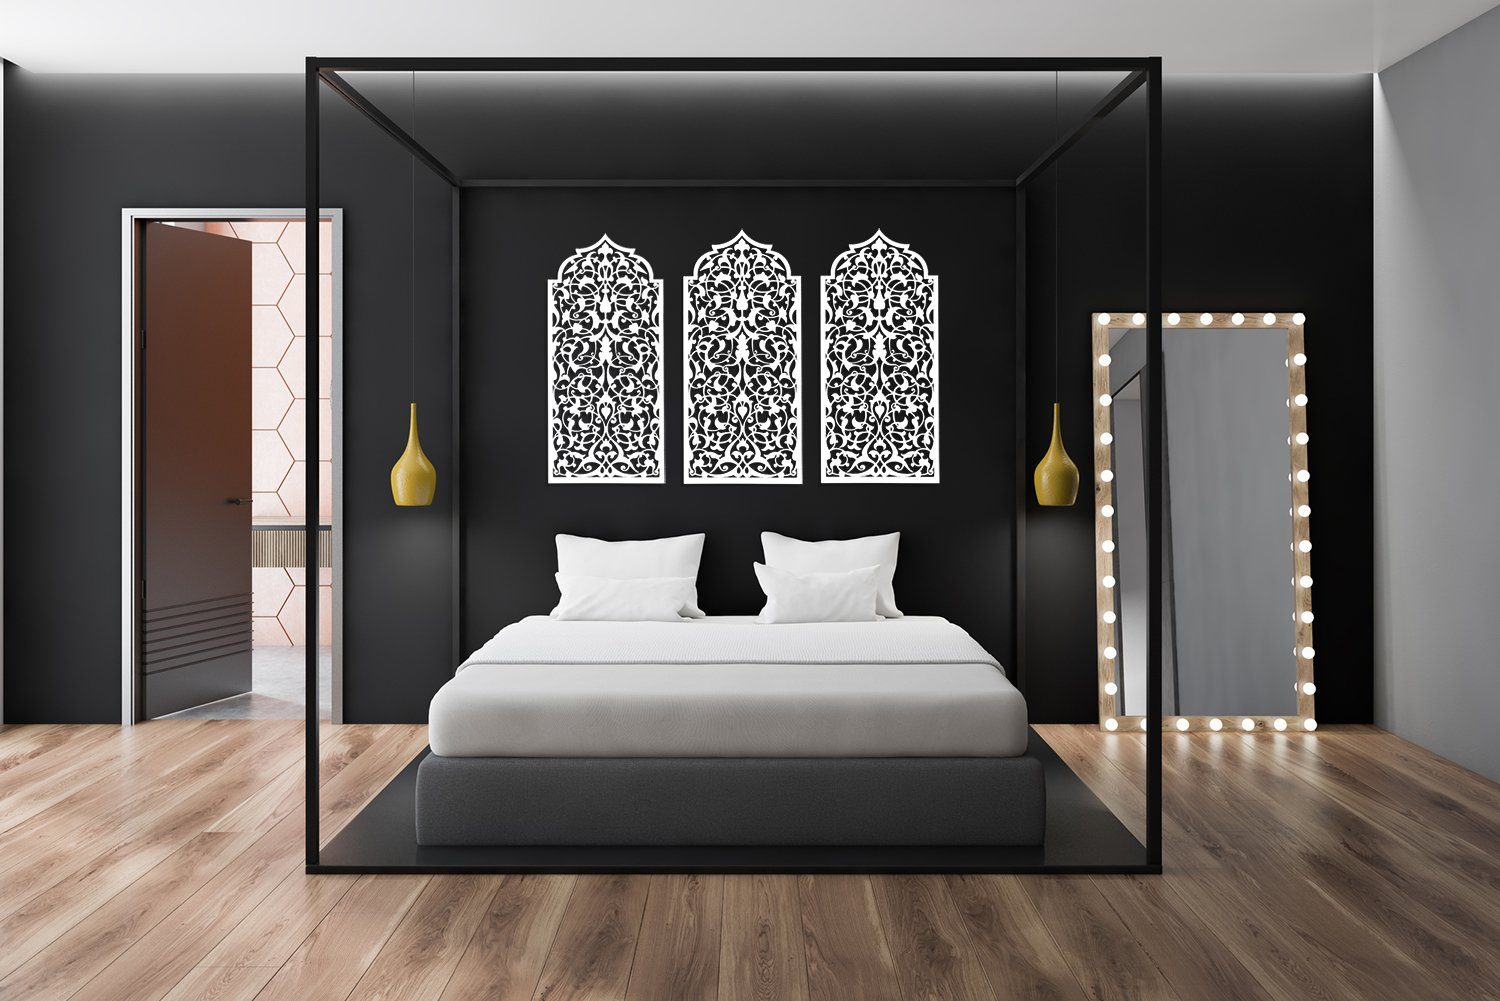 ORNAMENTI Mehrteilige Bilder 3D grosse Holzbild, Wanddeko, Marokkanisches Fenster, Handwerk